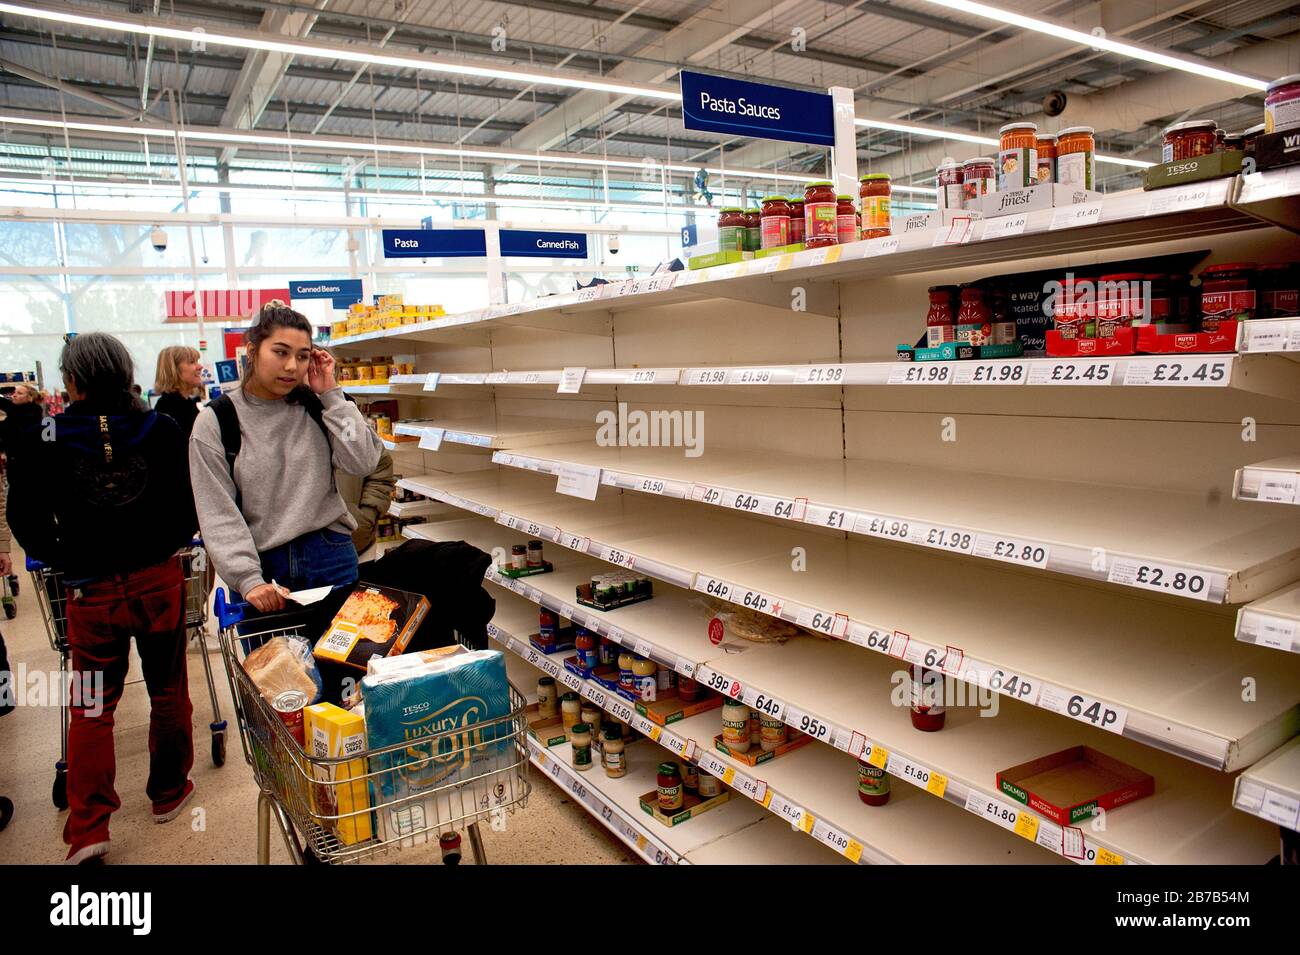 Tesco Supermarkt, Hove, Großbritannien, März 2020. Panikkäufe aufgrund der Befürchtungen vor Coronavirus haben die Regale von Lebensmitteln wie Pasta geleert. Stockfoto